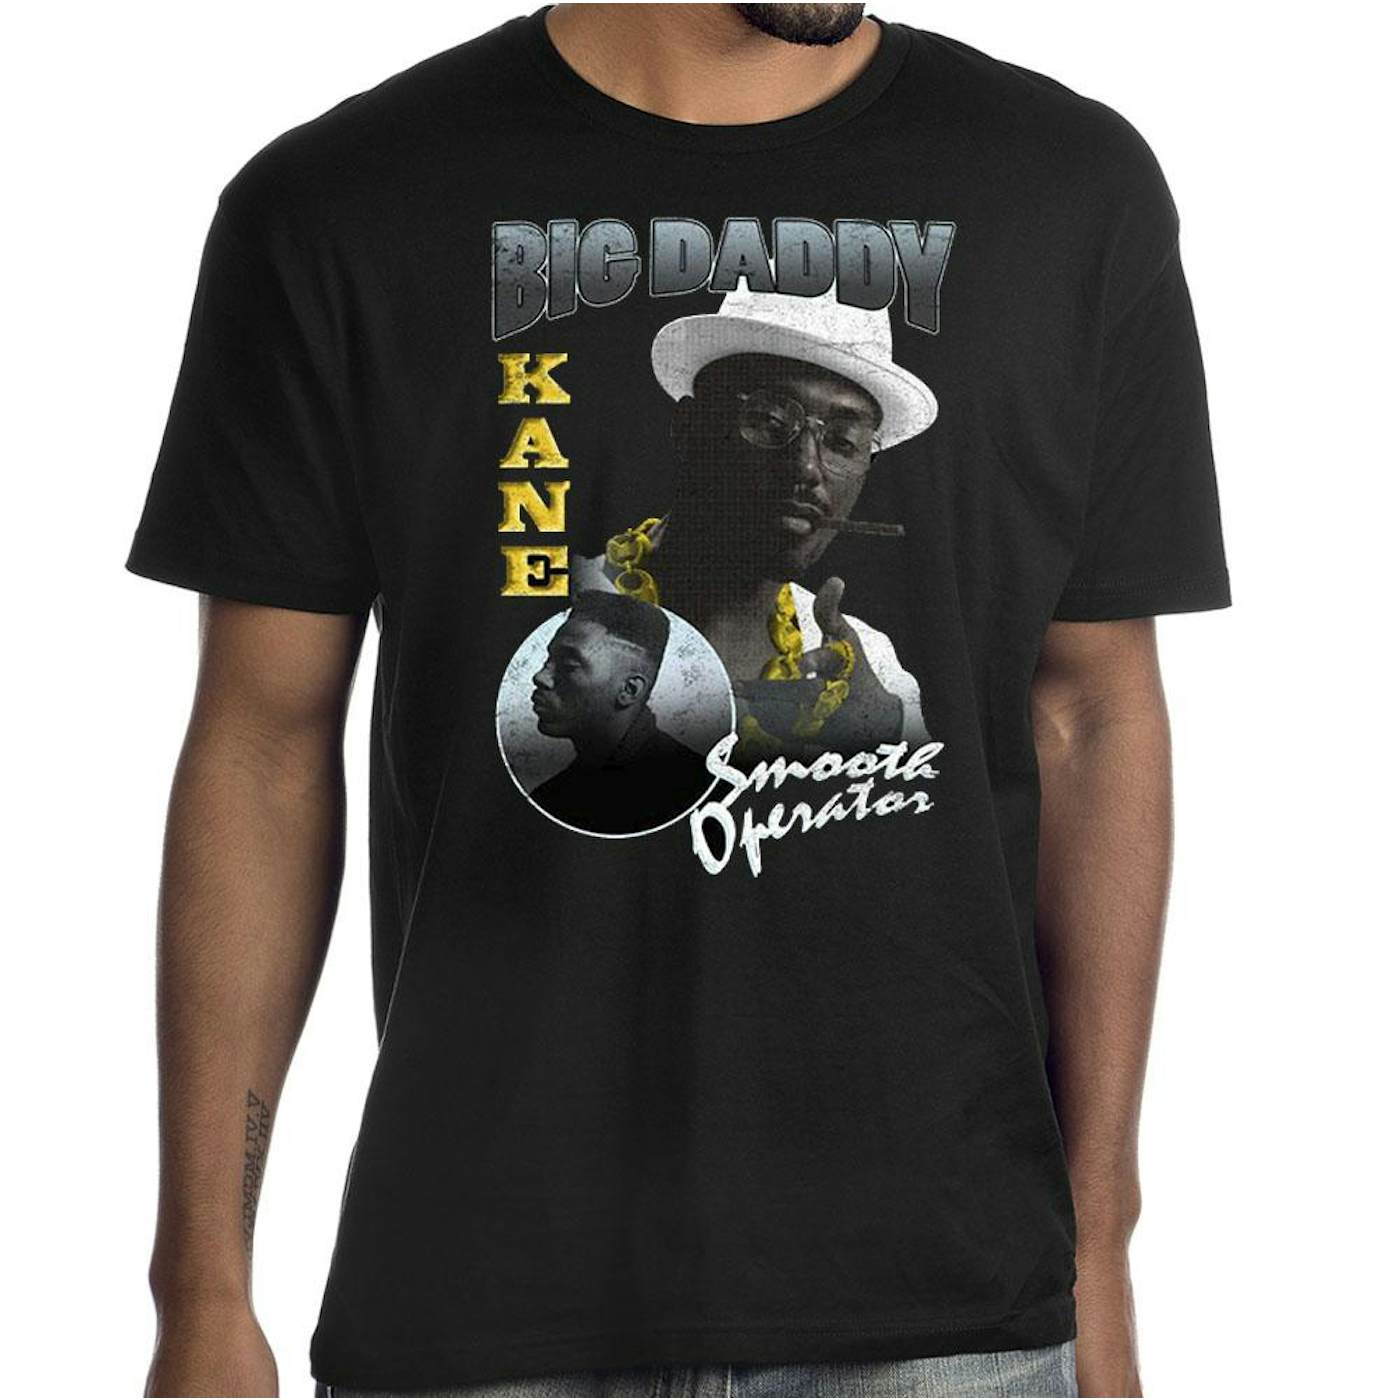 Big Daddy Kane "Smooth Operator" T-Shirt